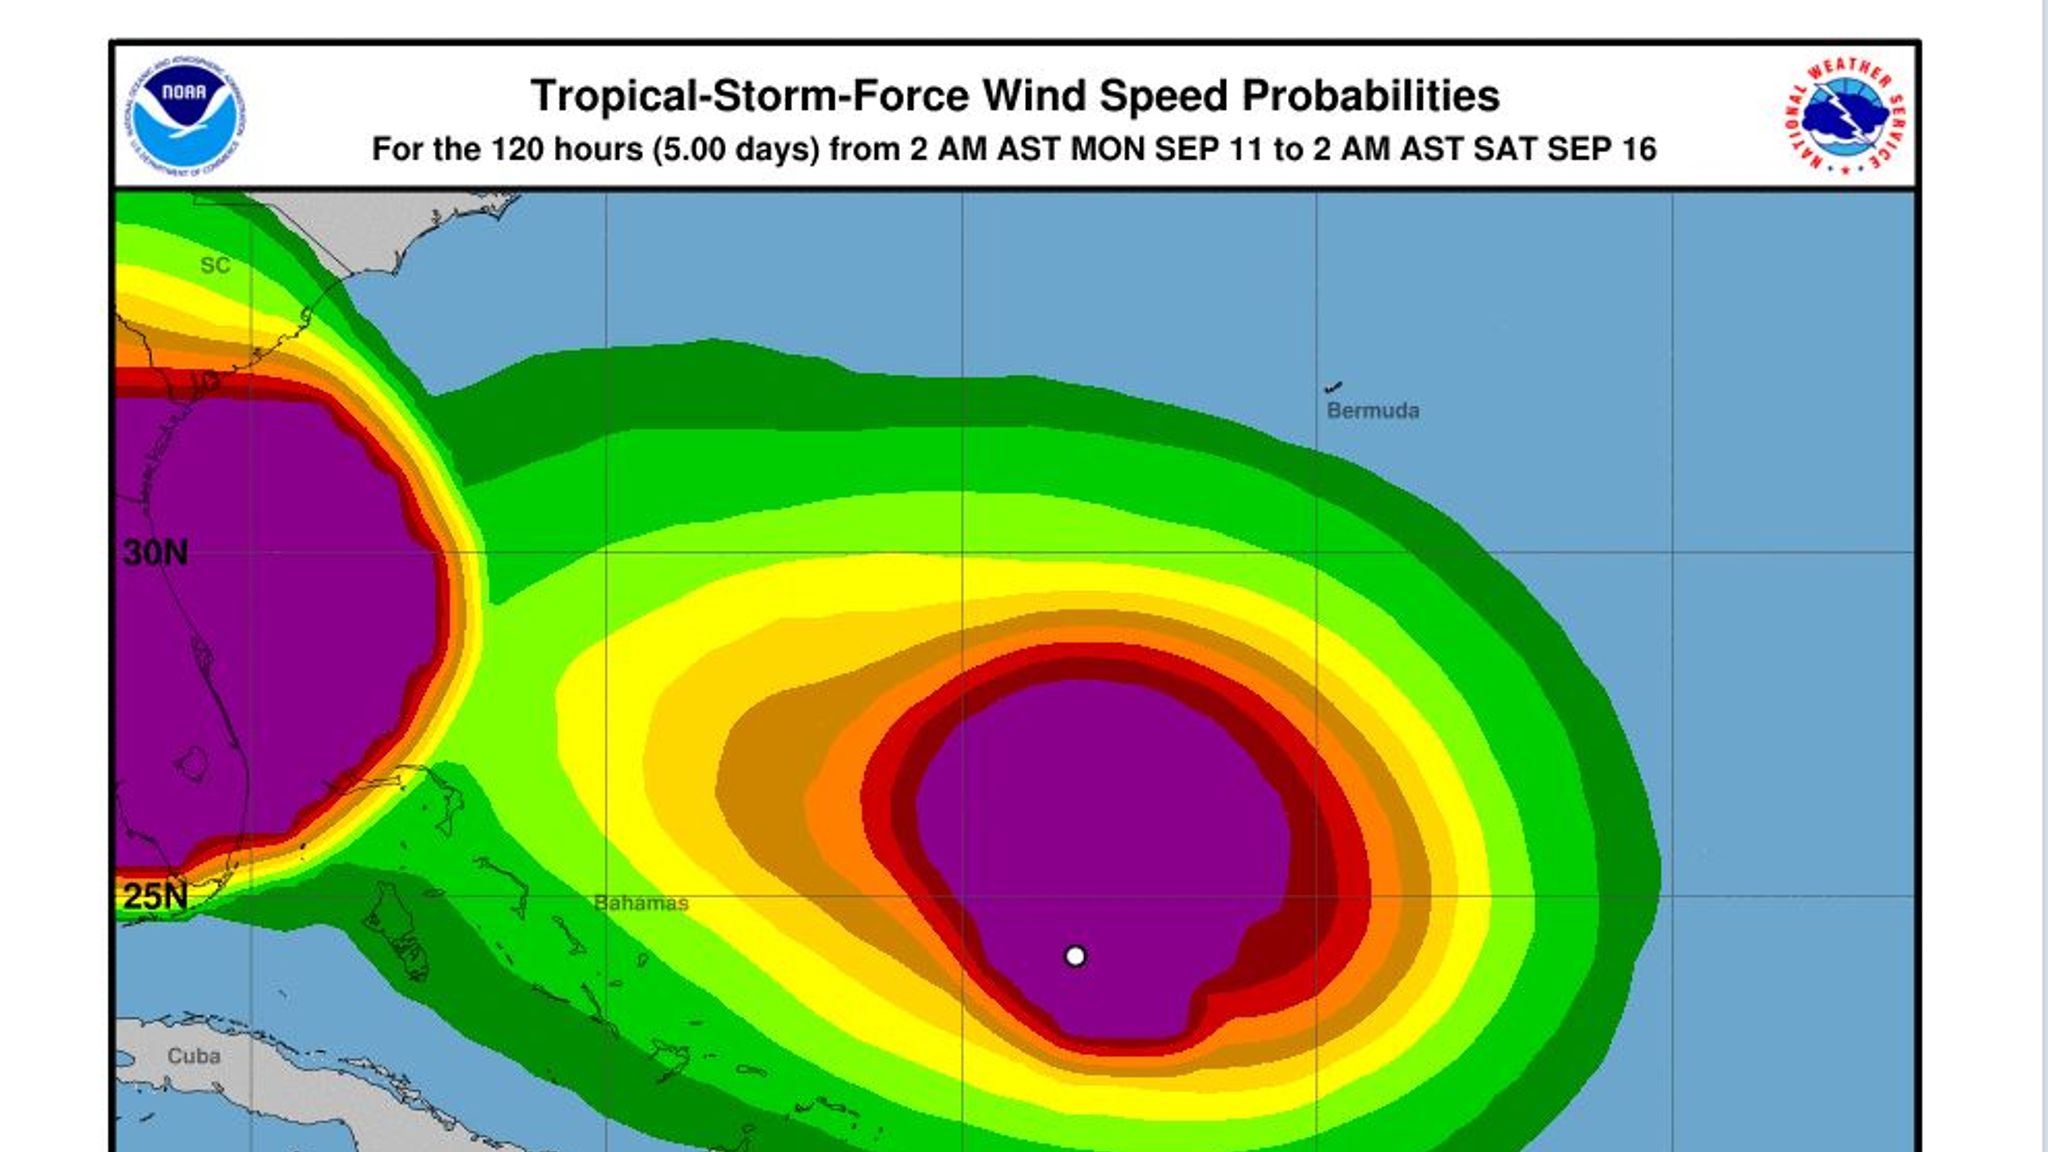 Hurricane Jose has weakened but will linger over Atlantic for days